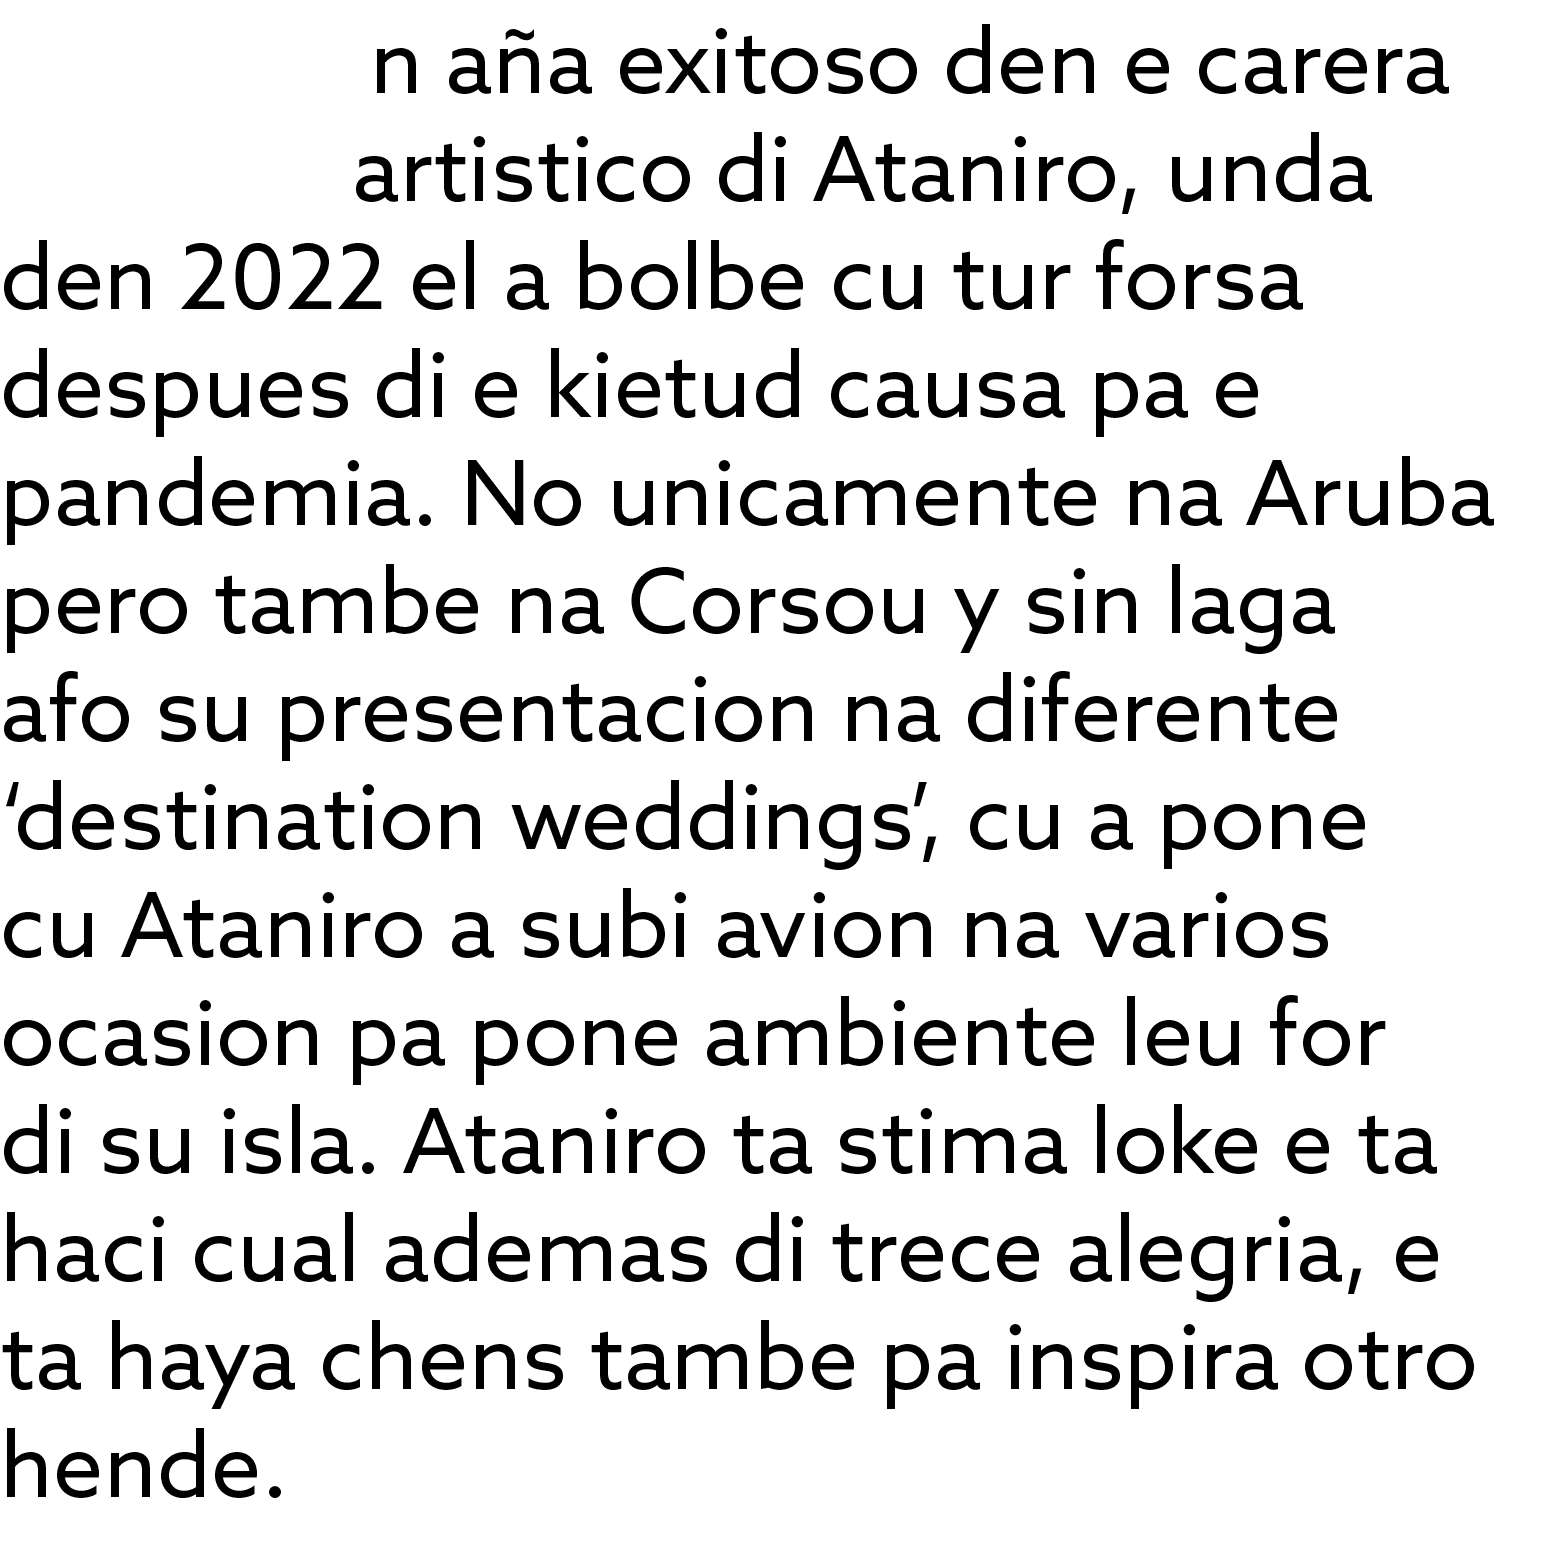 n a a exitoso den e carera artistico di Ataniro, unda den 2022 el a bolbe cu tur forsa despues di e kietud causa pa e...